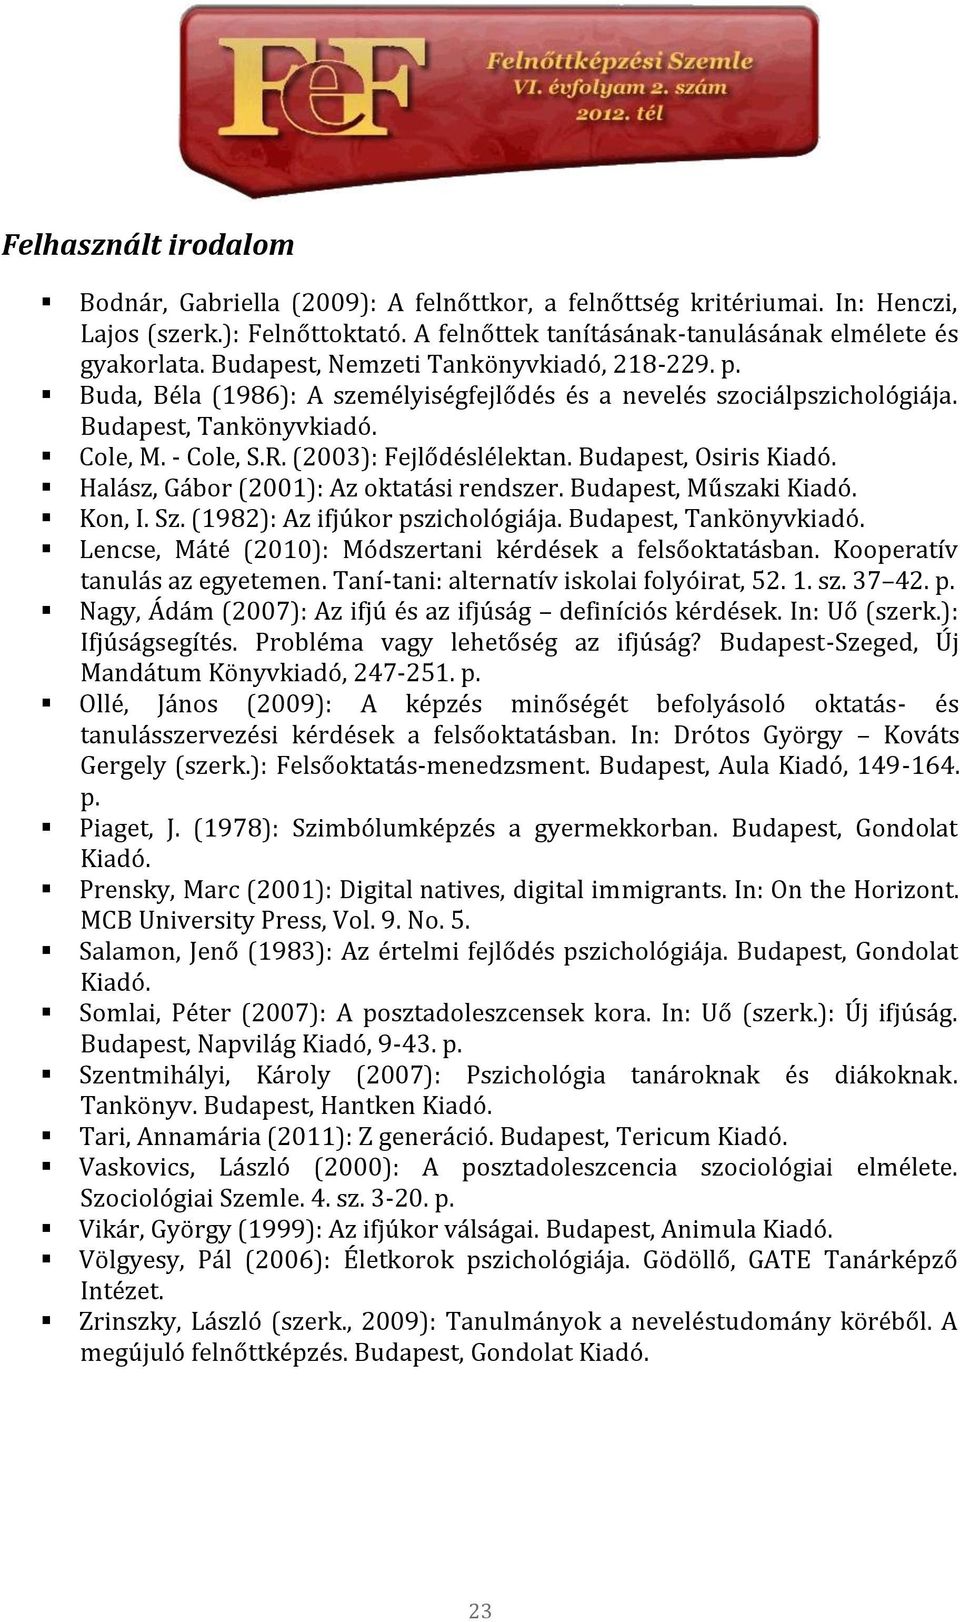 Budapest, Osiris Kiadó. Halász, Gábor (2001): Az oktatási rendszer. Budapest, Műszaki Kiadó. Kon, I. Sz. (1982): Az ifjúkor pszichológiája. Budapest, Tankönyvkiadó.